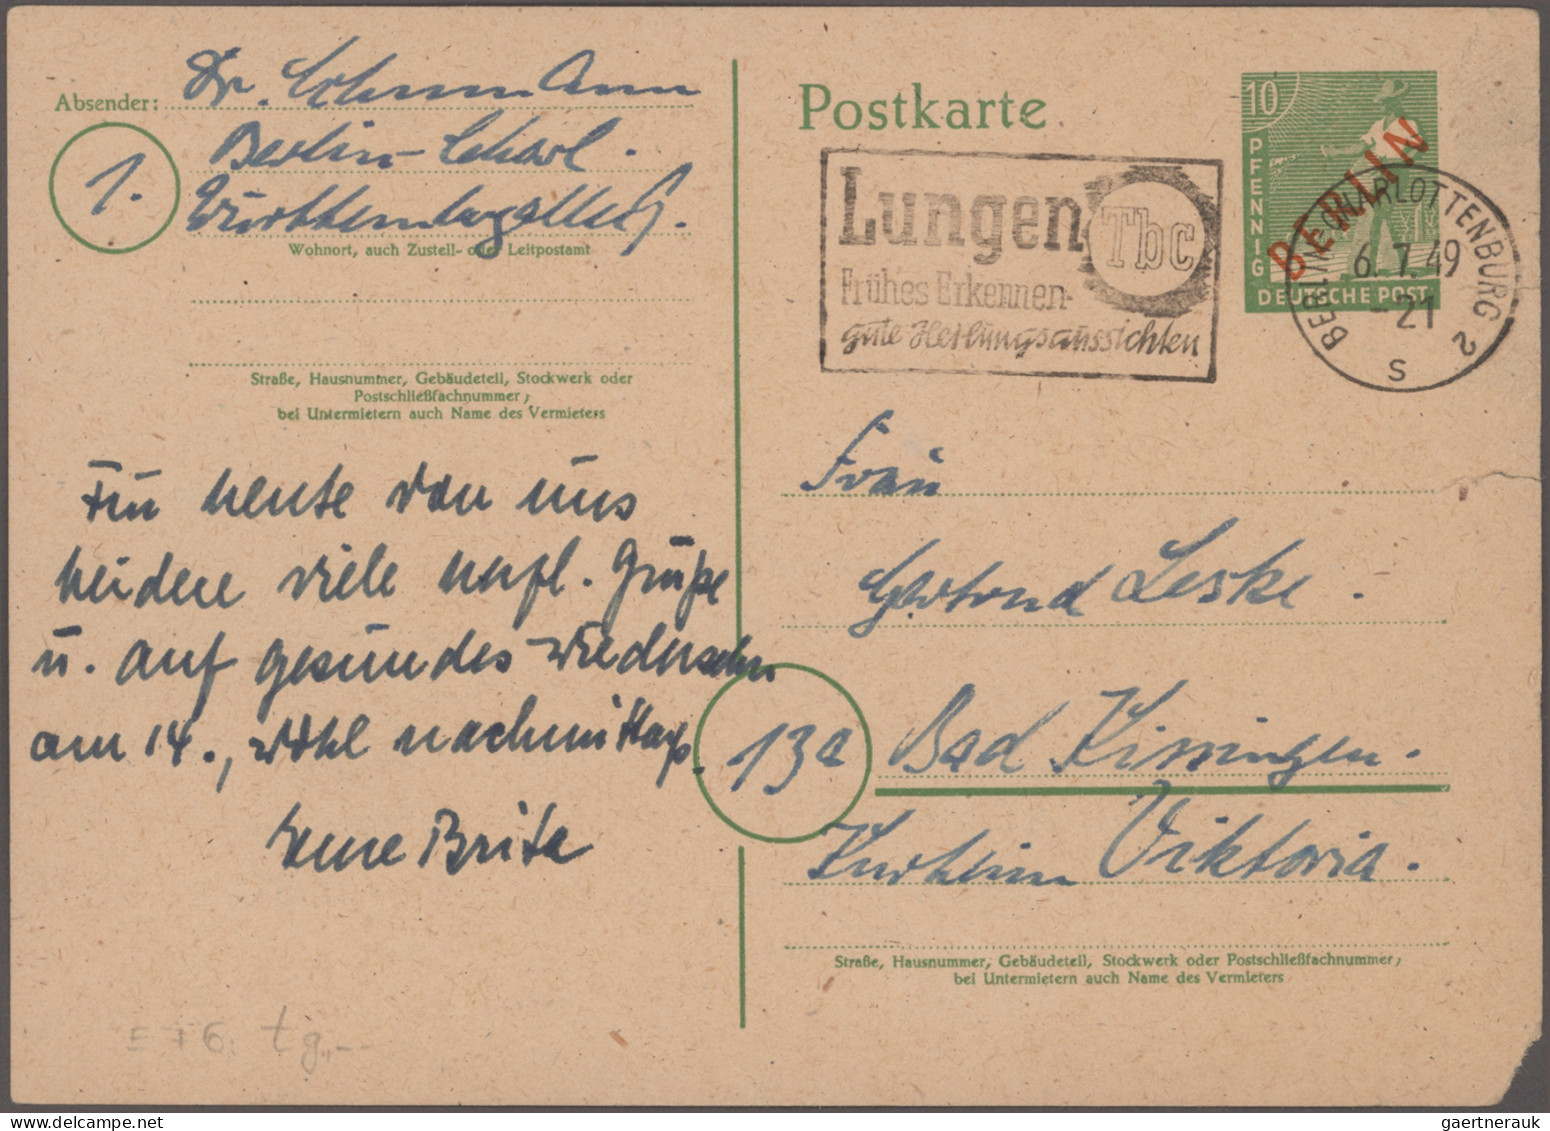 Berlin: 1949/1964, saubere Partie von 59 Briefen und Karten, dabei bessere Frank